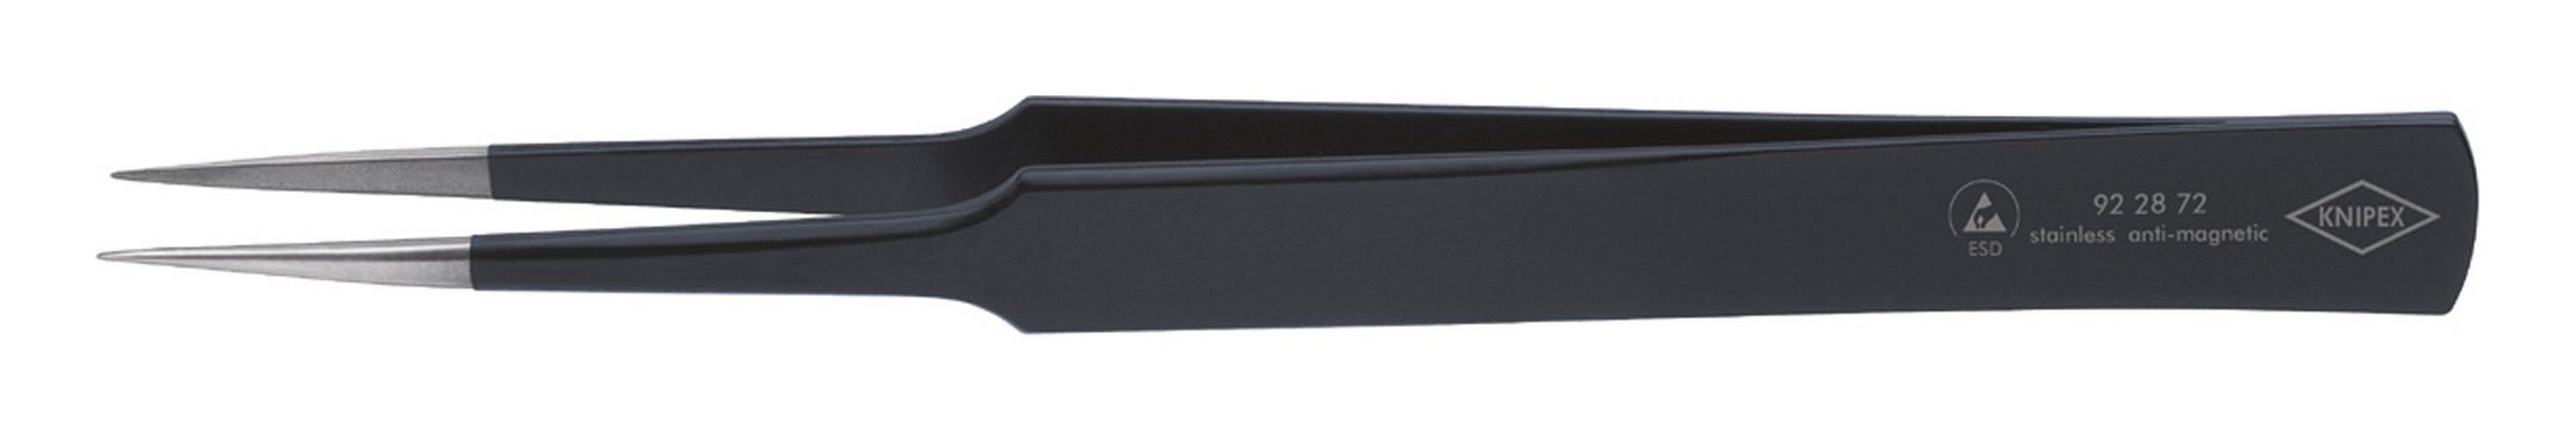 Knipex Pinzette, schwarz US-Nadelform ESD 135 mm